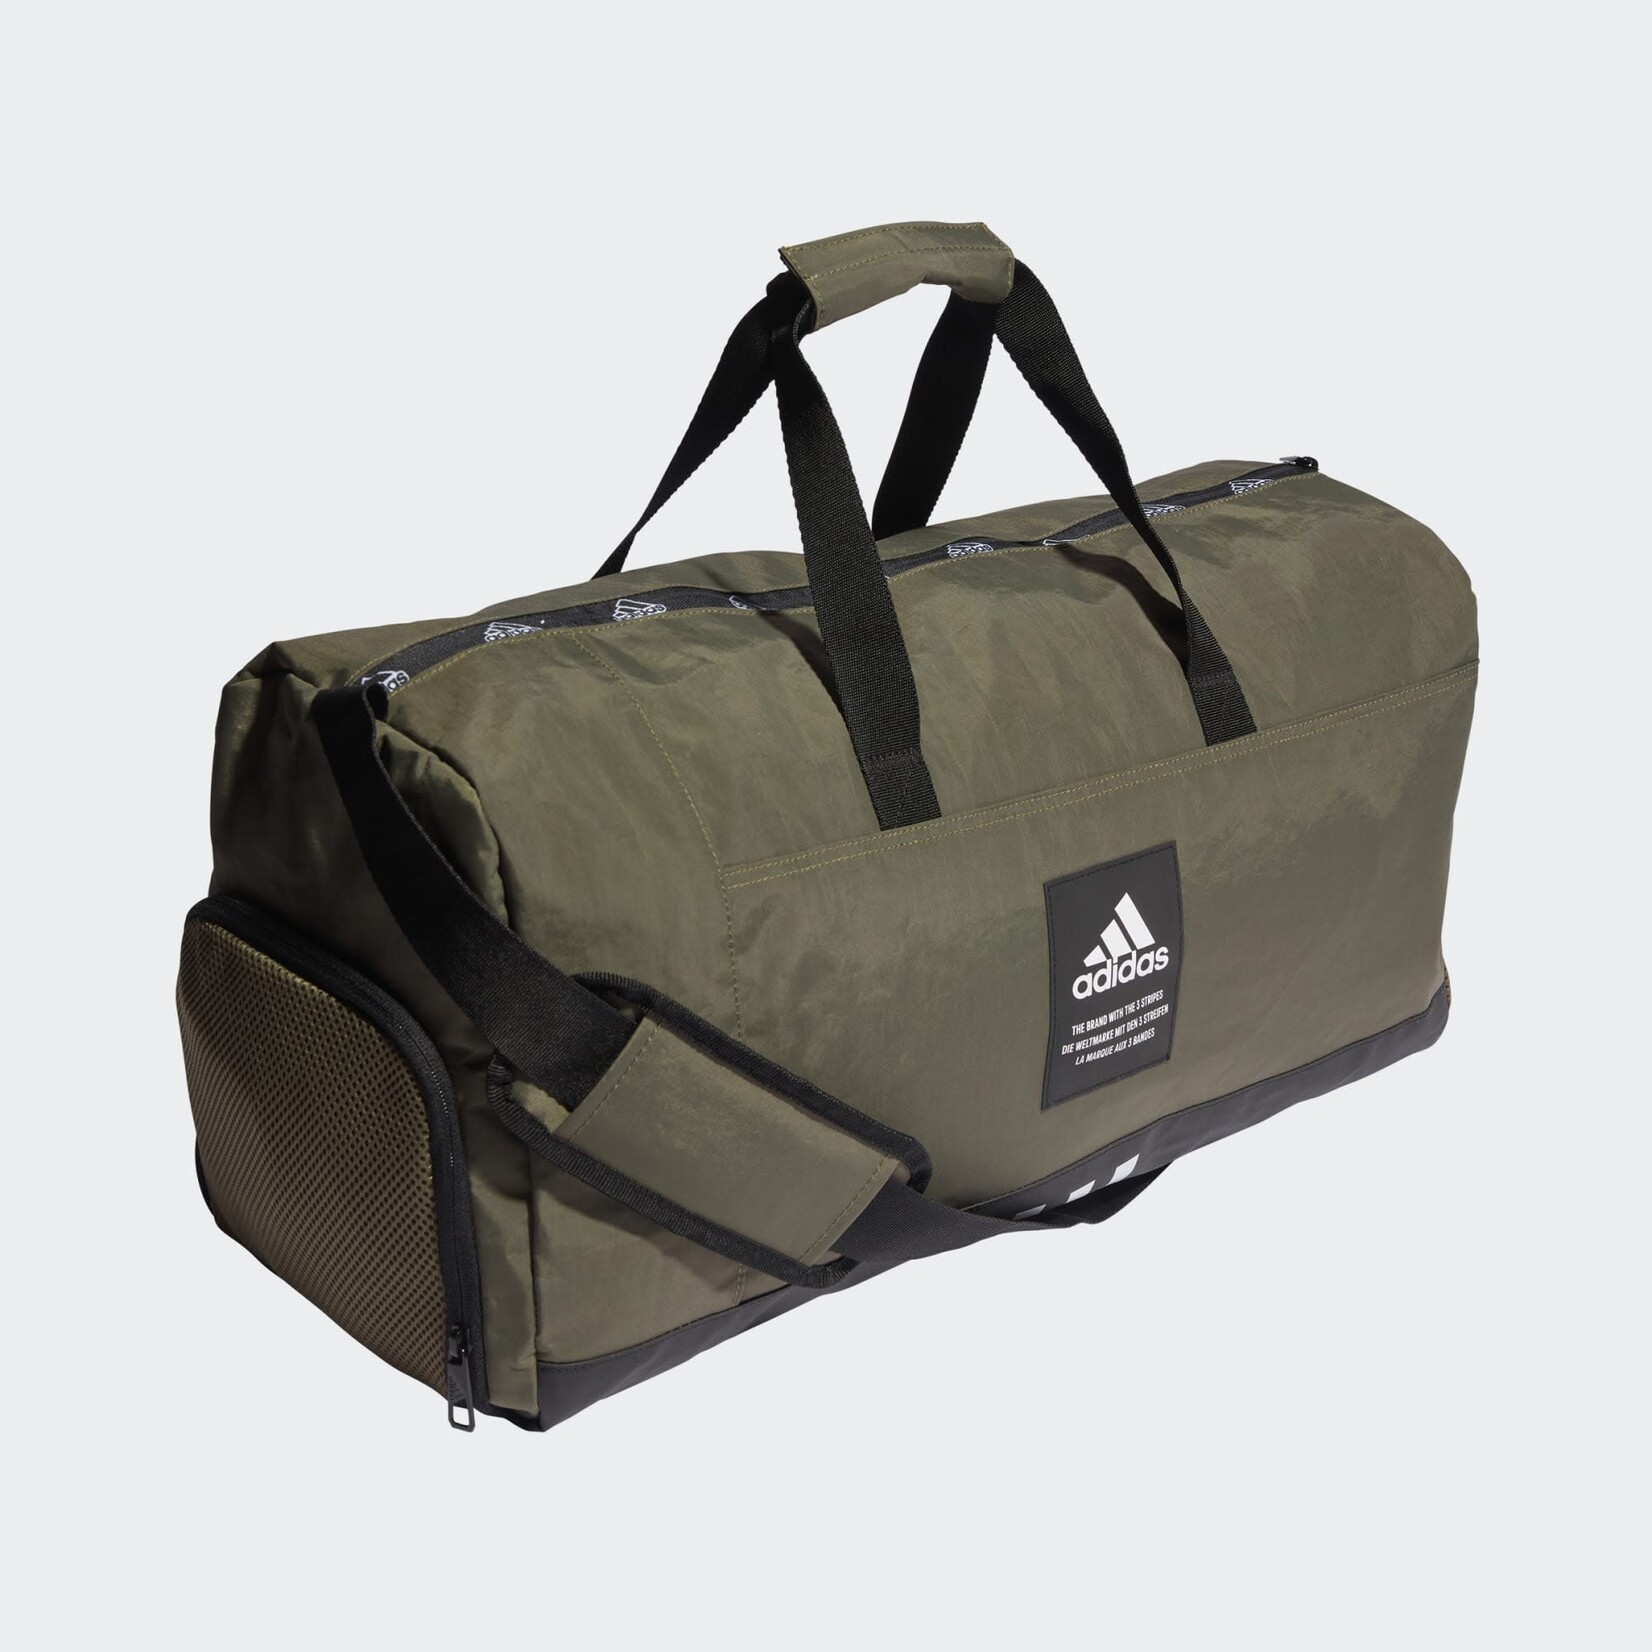 Adidas Adidas Duffle Bag, 4ATHLTS